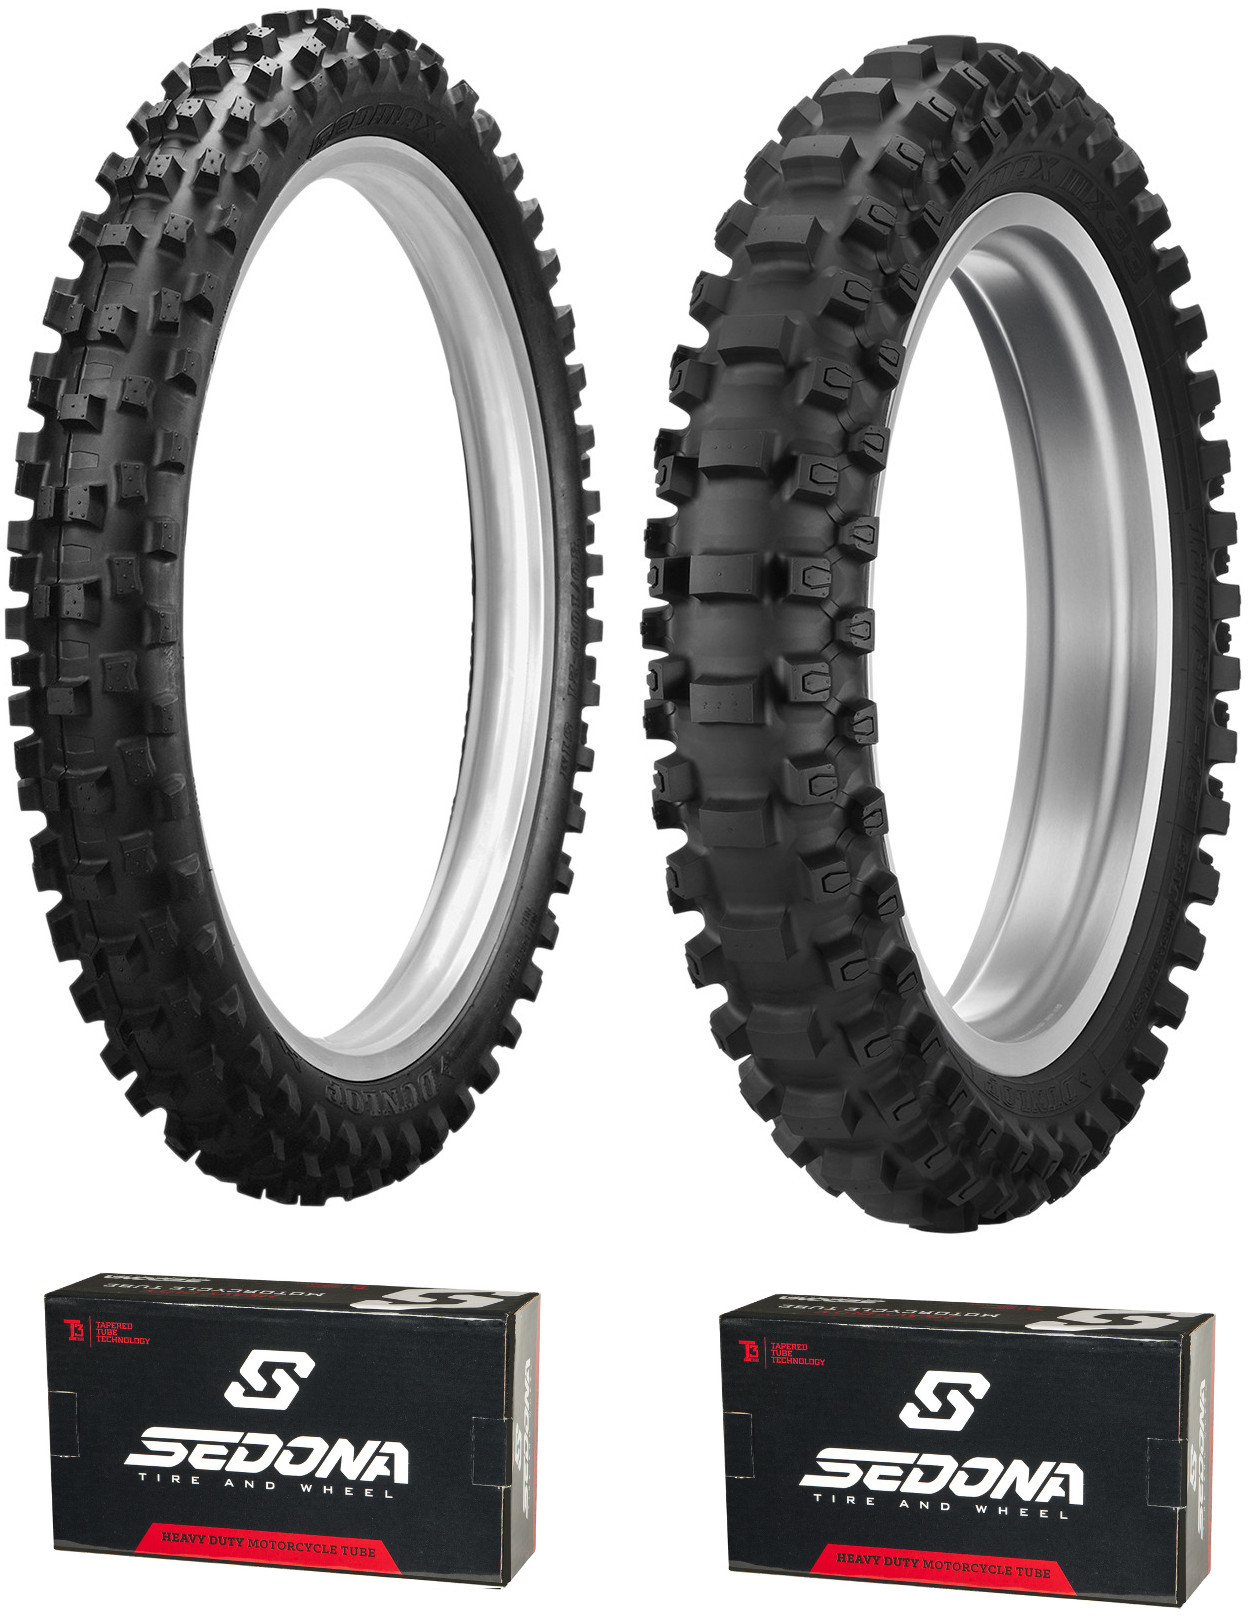 MX3S 80/100-21 & MX33 120/80-19 Tire Kit - w/ HD Sedona Tubes - Click Image to Close